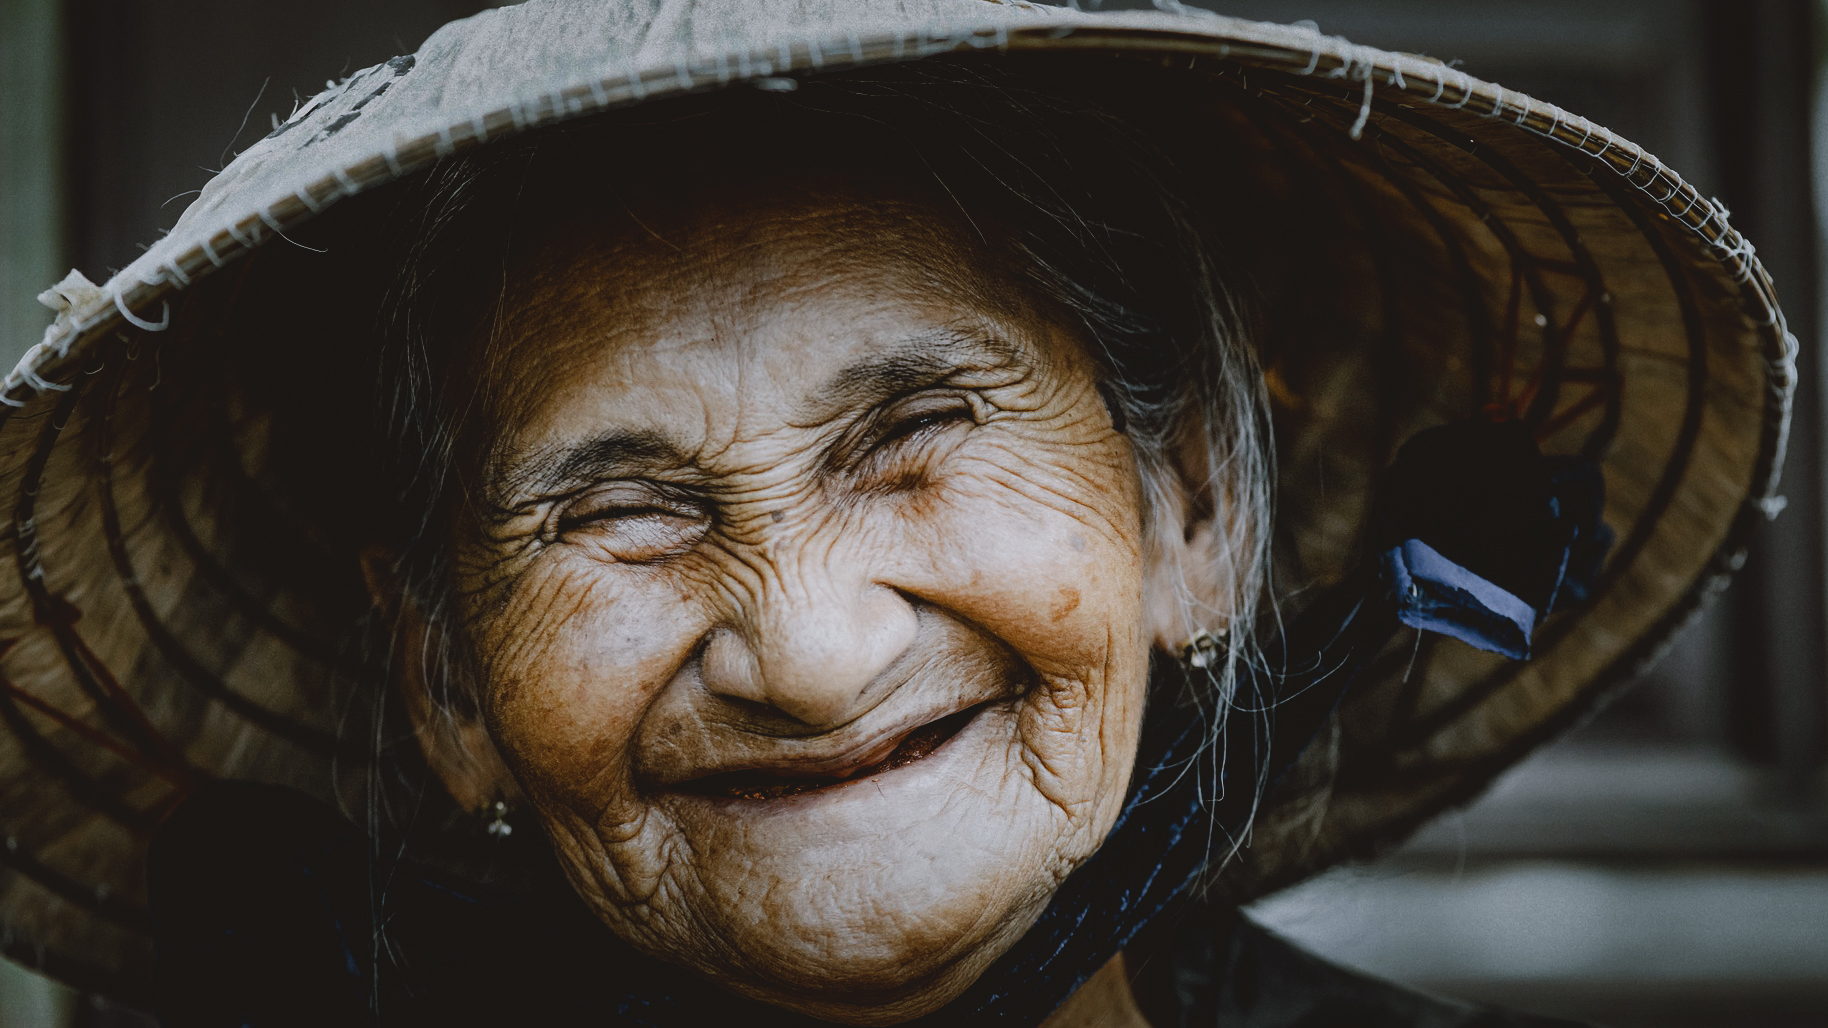 Nụ cười: Liều thuốc chữa lành những đau khổ